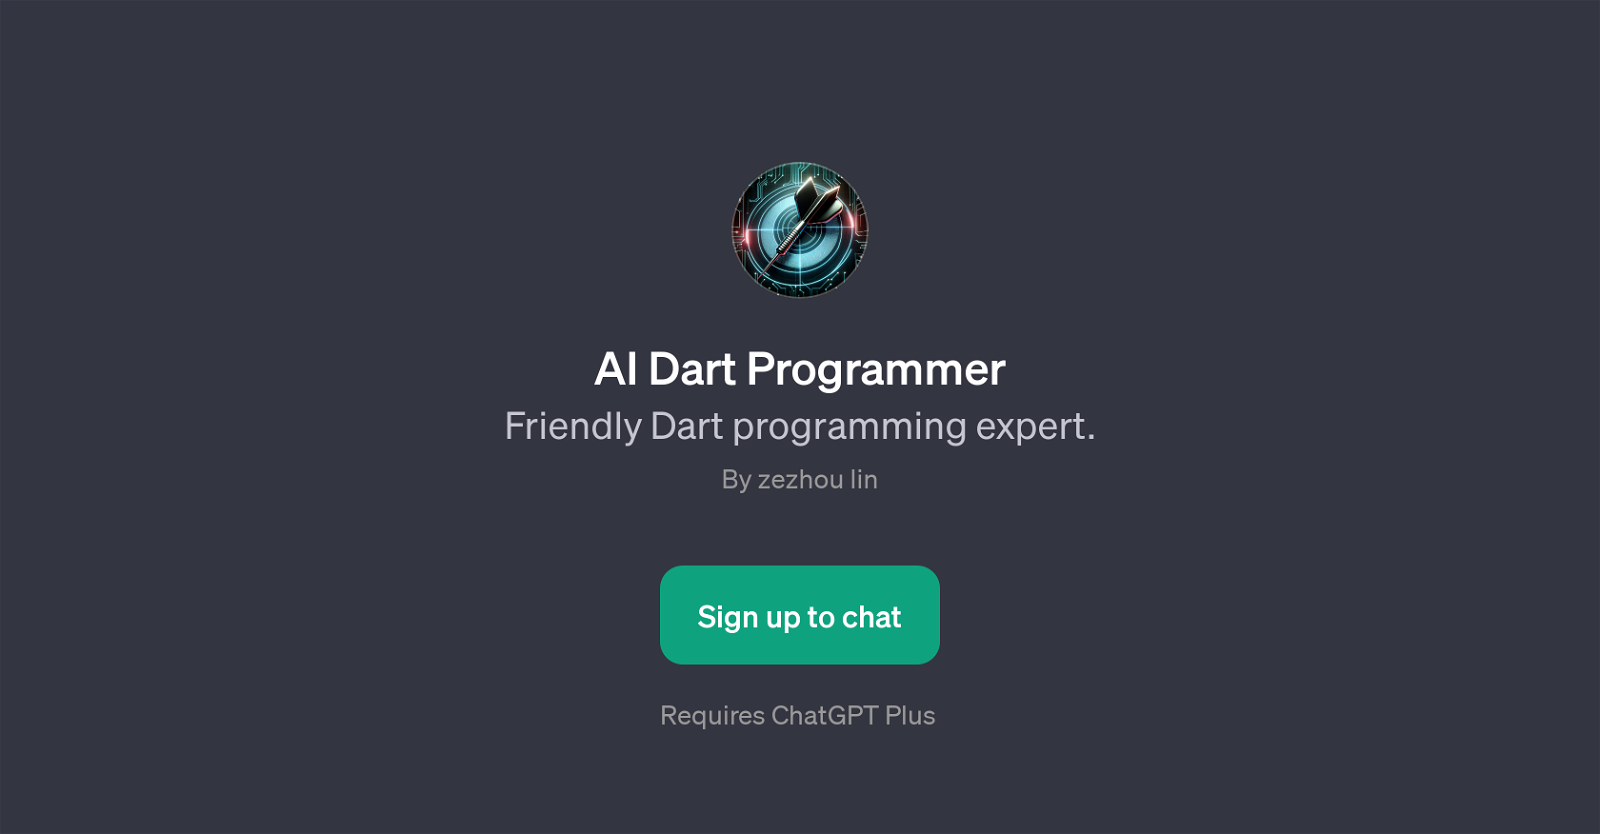 AI Dart Programmer website